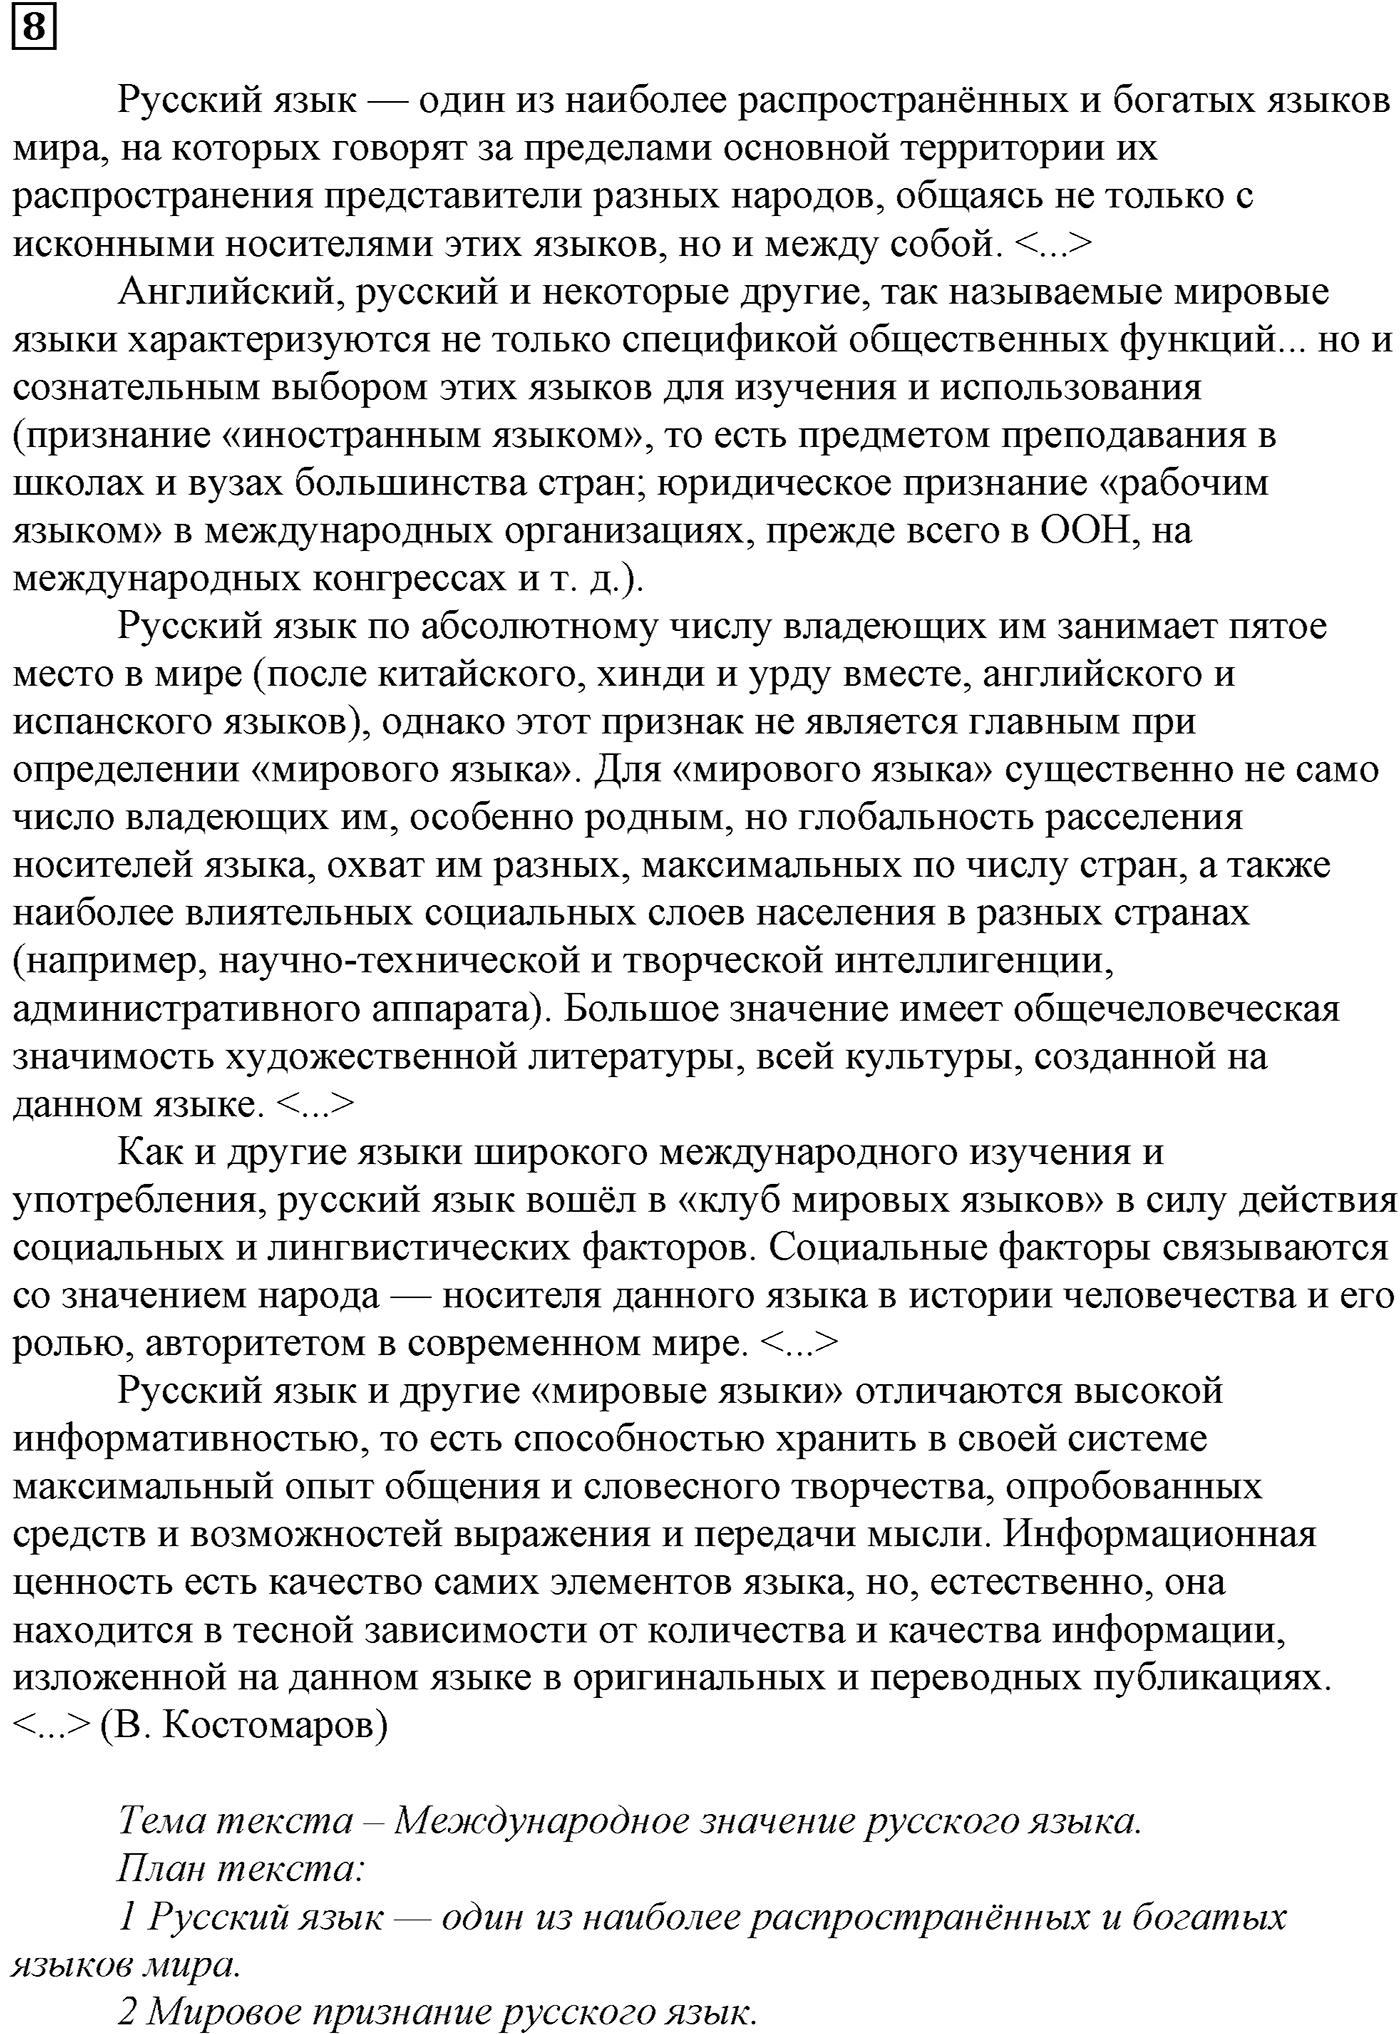 упражнение №8 русский язык 10-11 класс Власенков